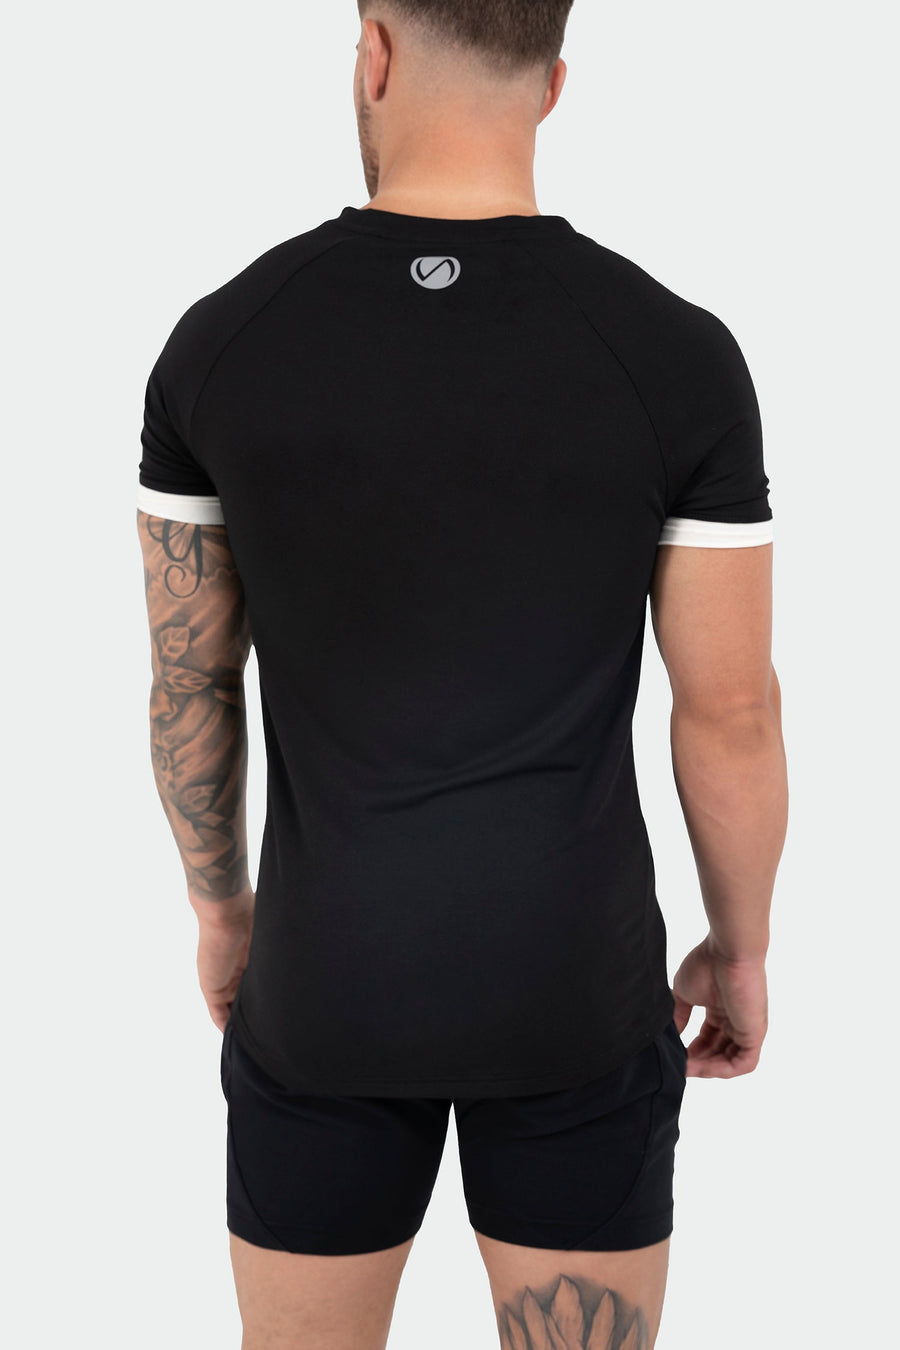 TLF Air-Flex Classic Tee - Men Modal Shirt - Black - 4